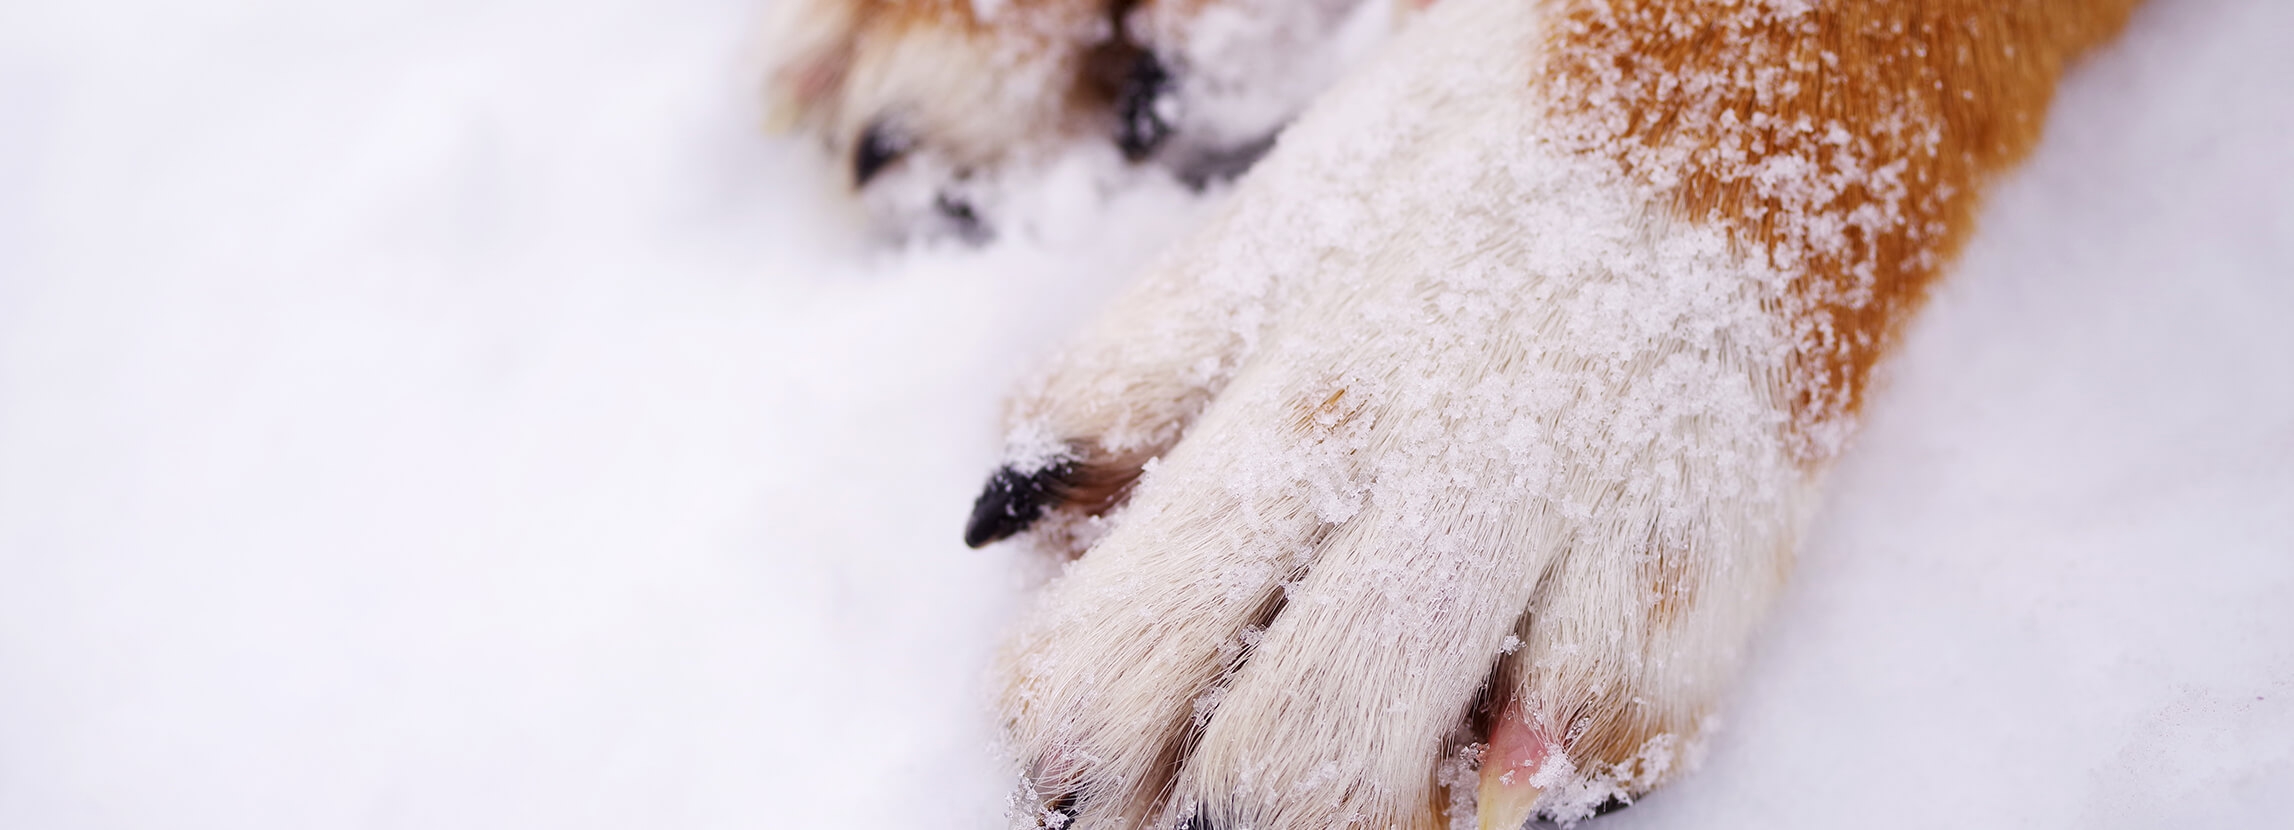 Jak chronić łapy psa w zimę?